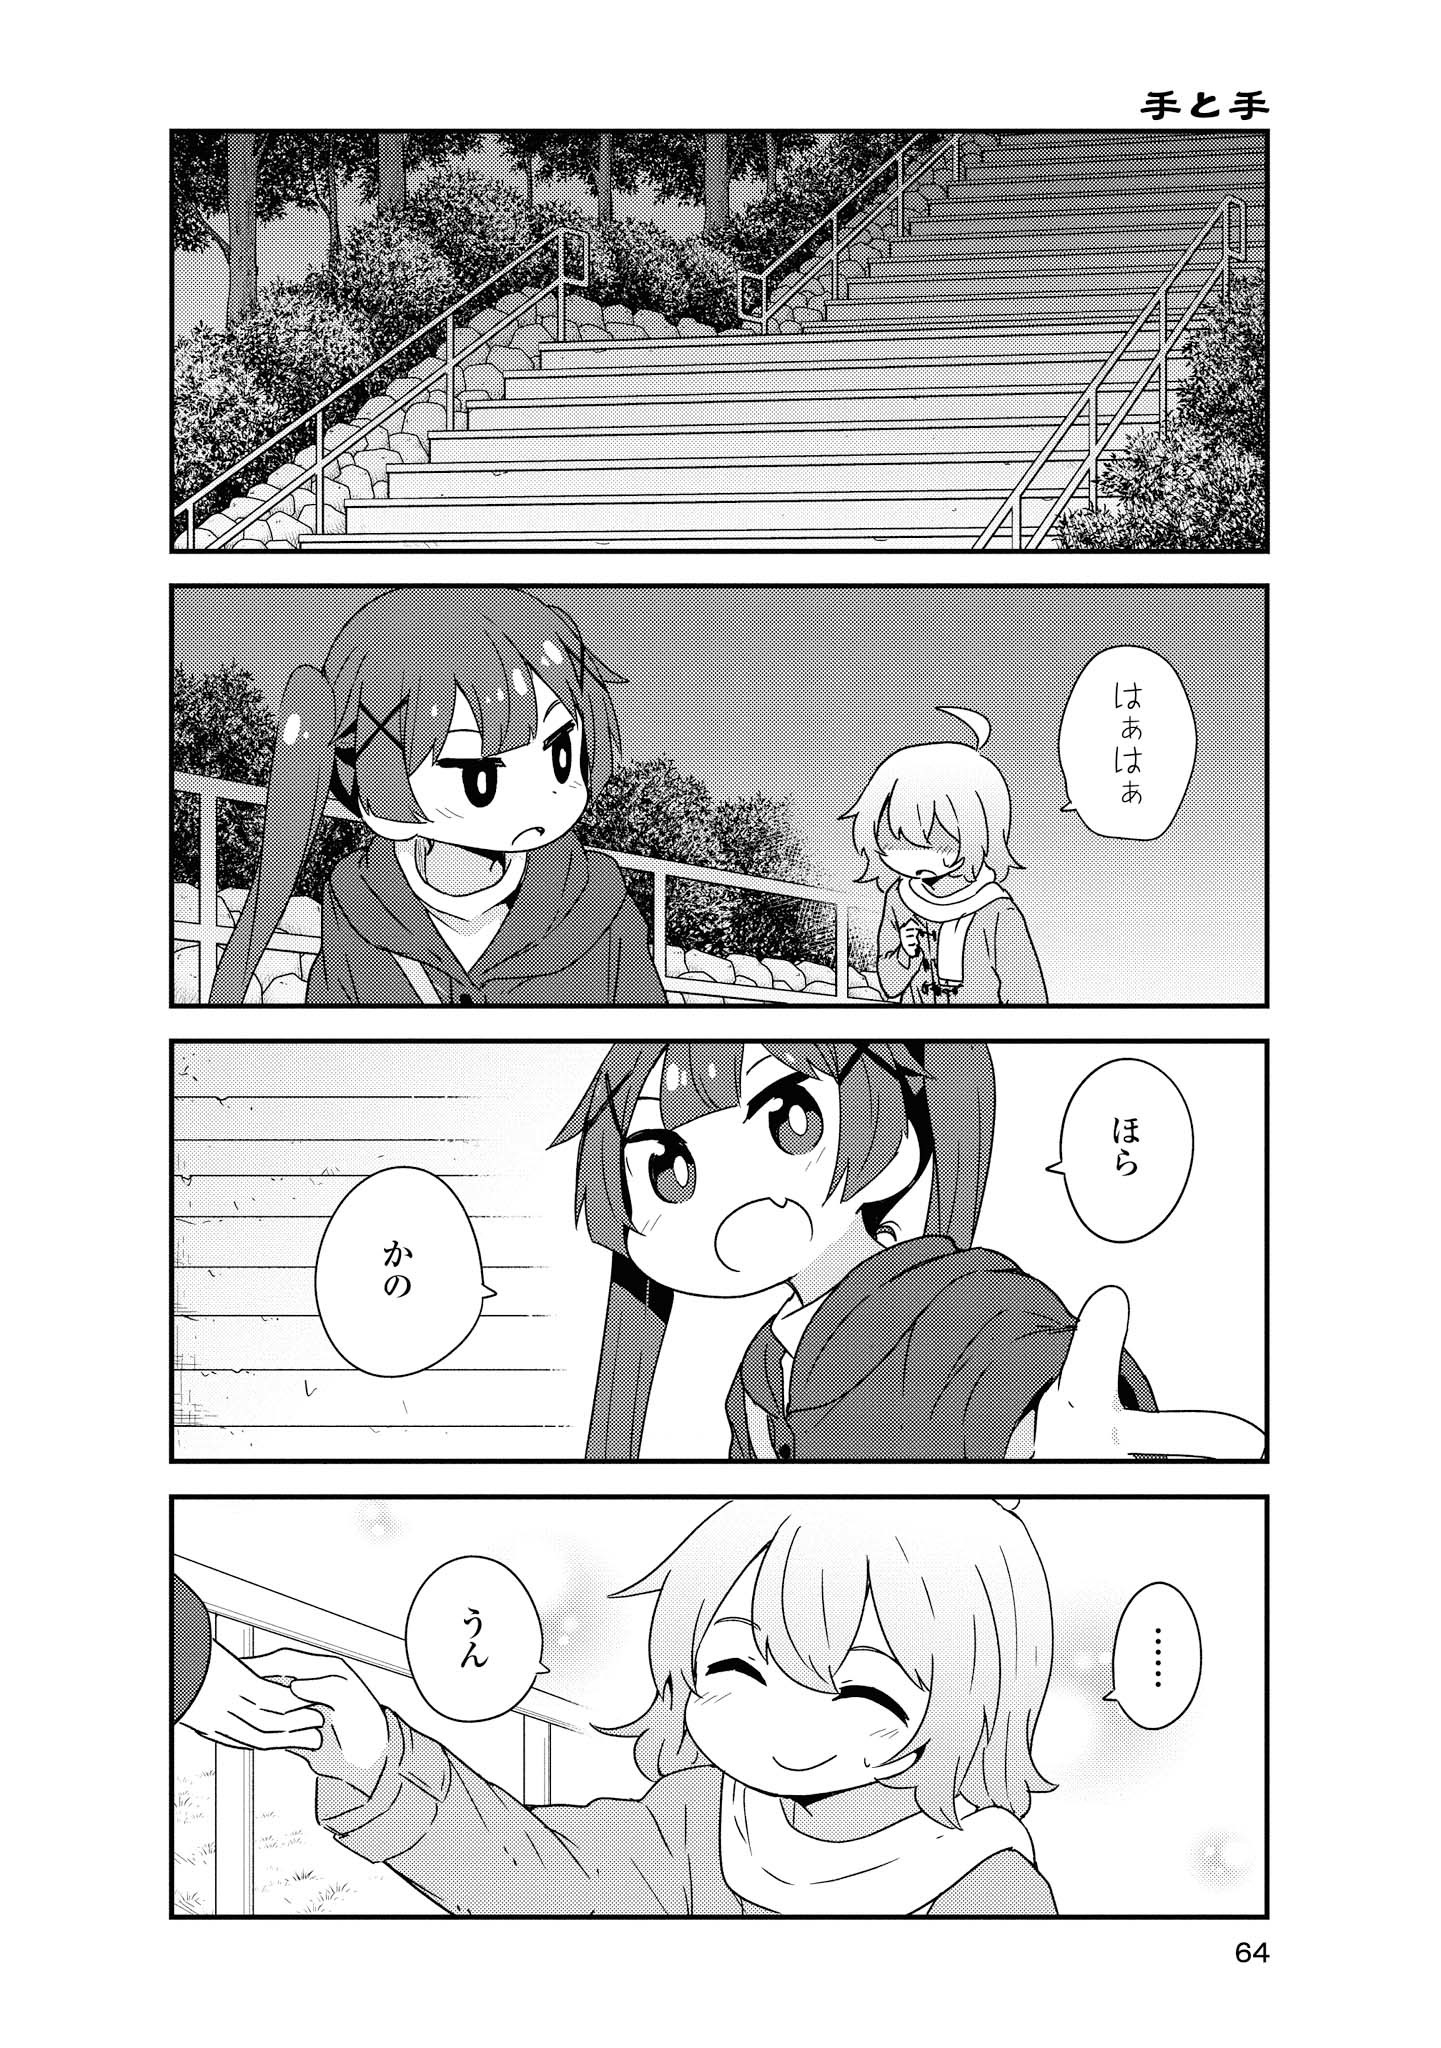 Watashi ni Tenshi ga Maiorita! - Chapter 47 - Page 4